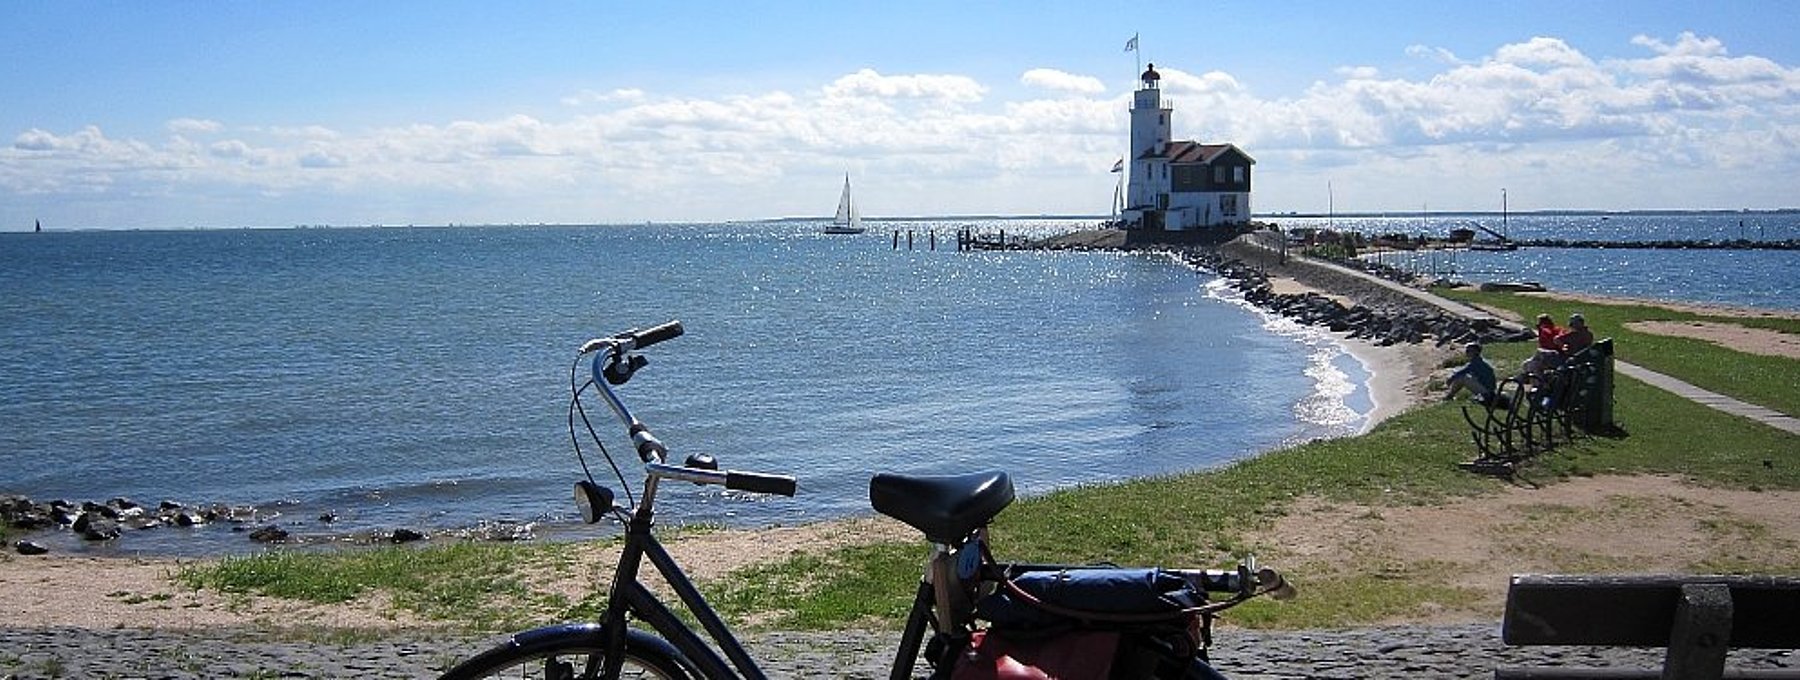 Leuchtturm auf der Insel Marken, im Vordergrund steht ein Fahrrad